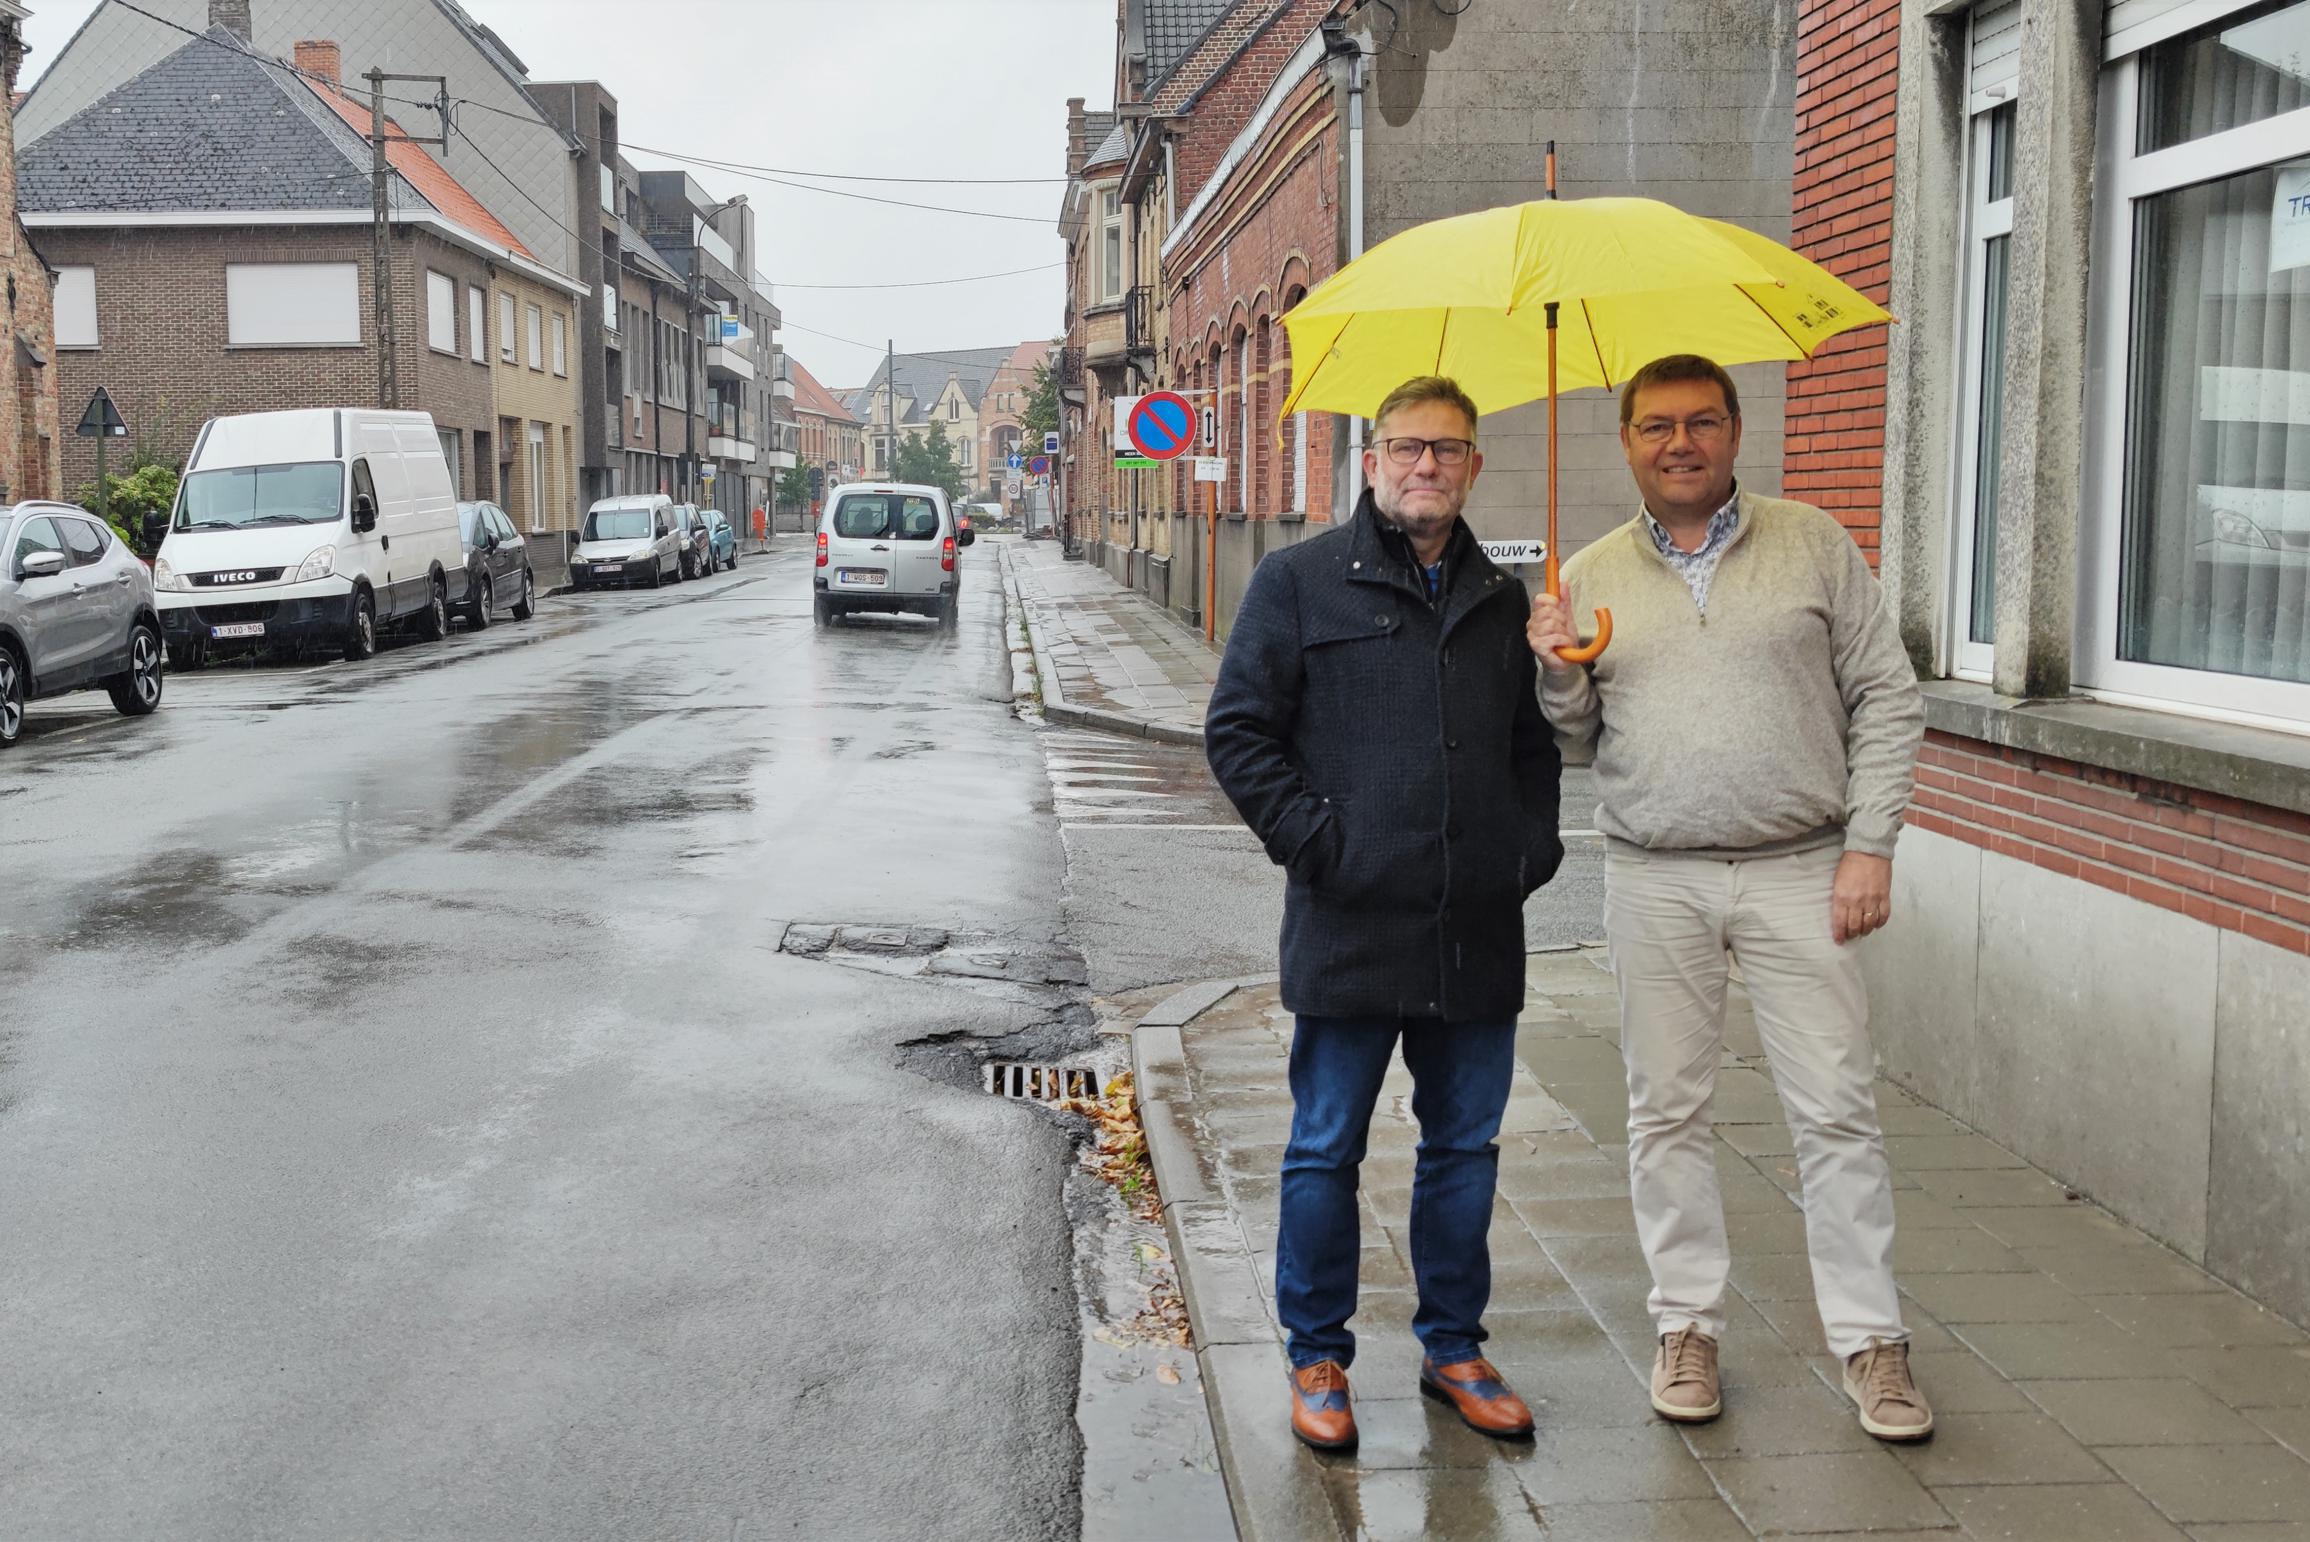 Provincie keurt herinrichting Bruggestraat goed: “Meer comfort en fietsveiligheid in centrum”